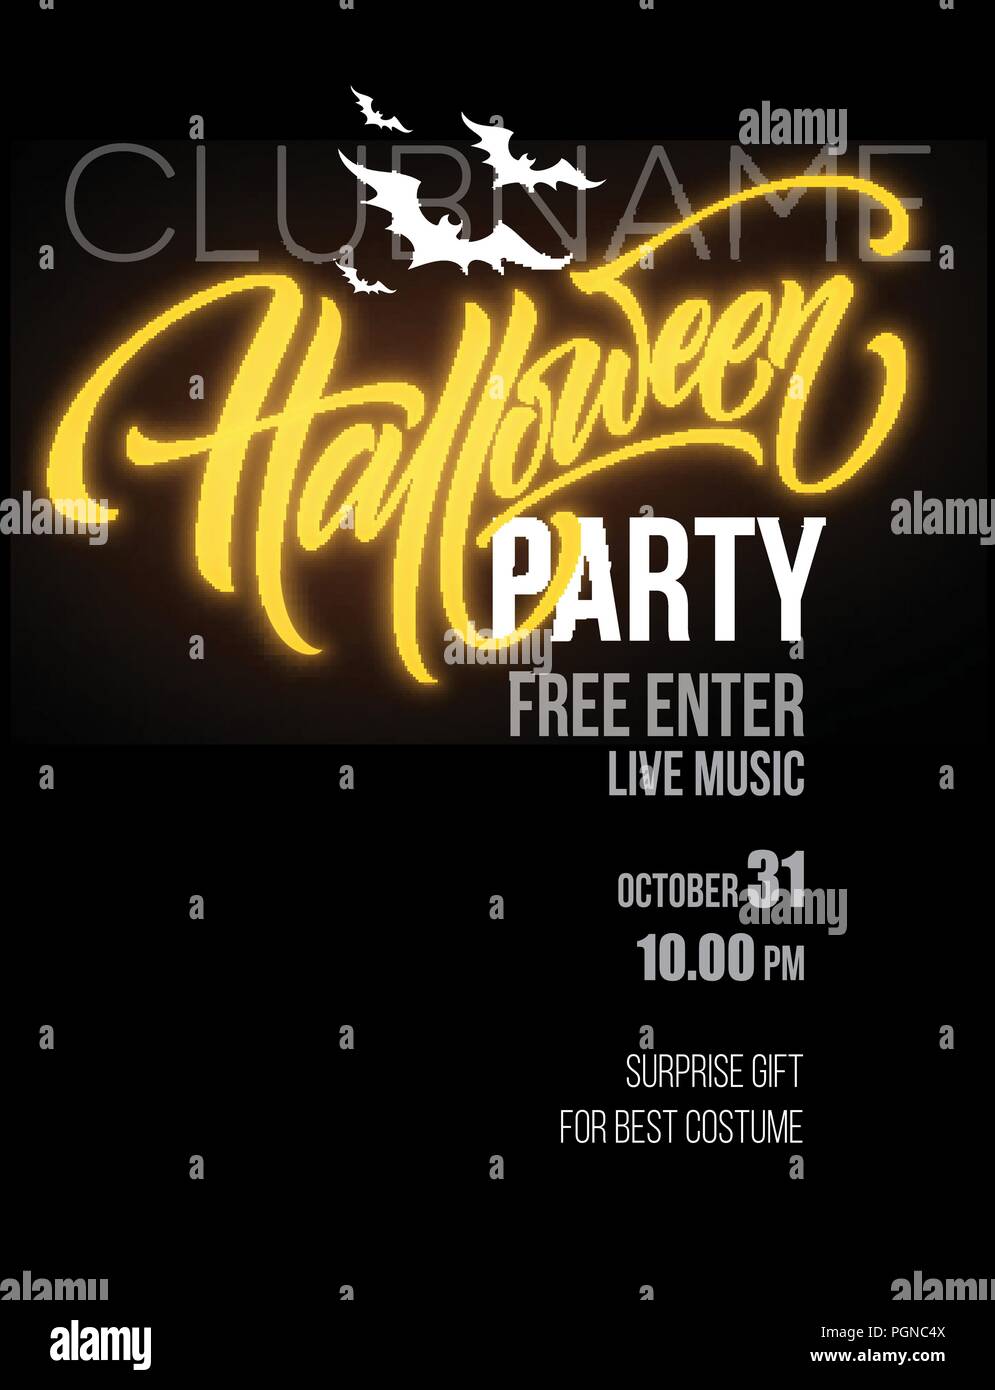 Halloween party poster avec le vol des chauve-souris et lune jaune Illustration de Vecteur